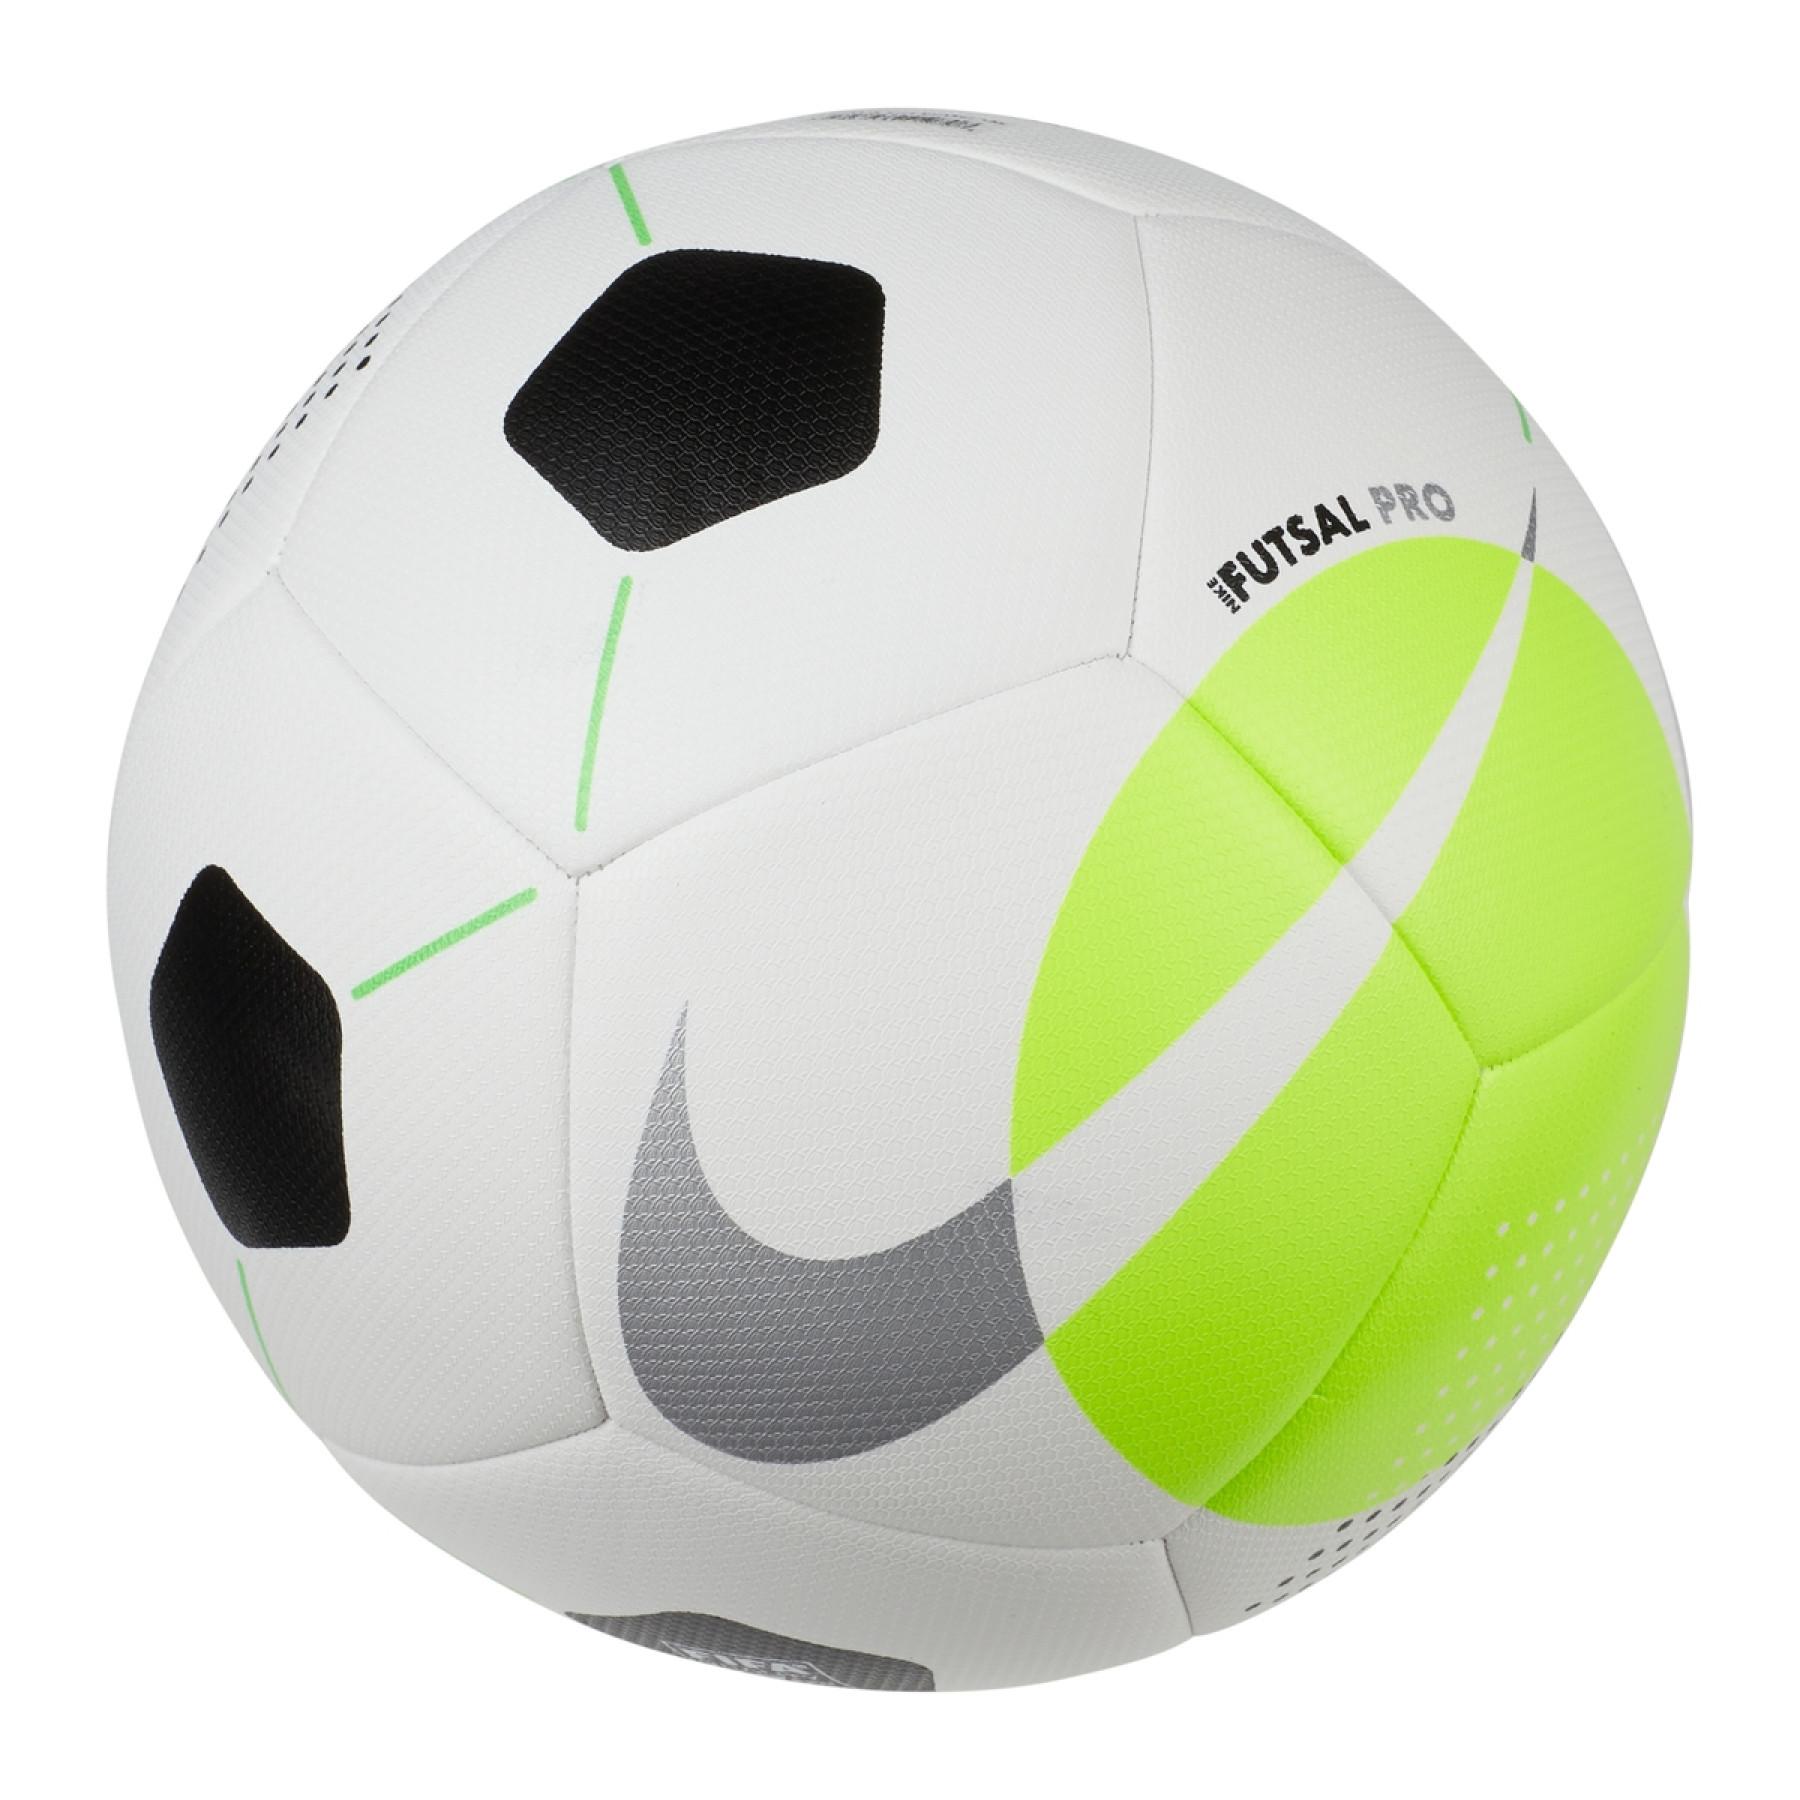 Ballong Nike Futsal Pro